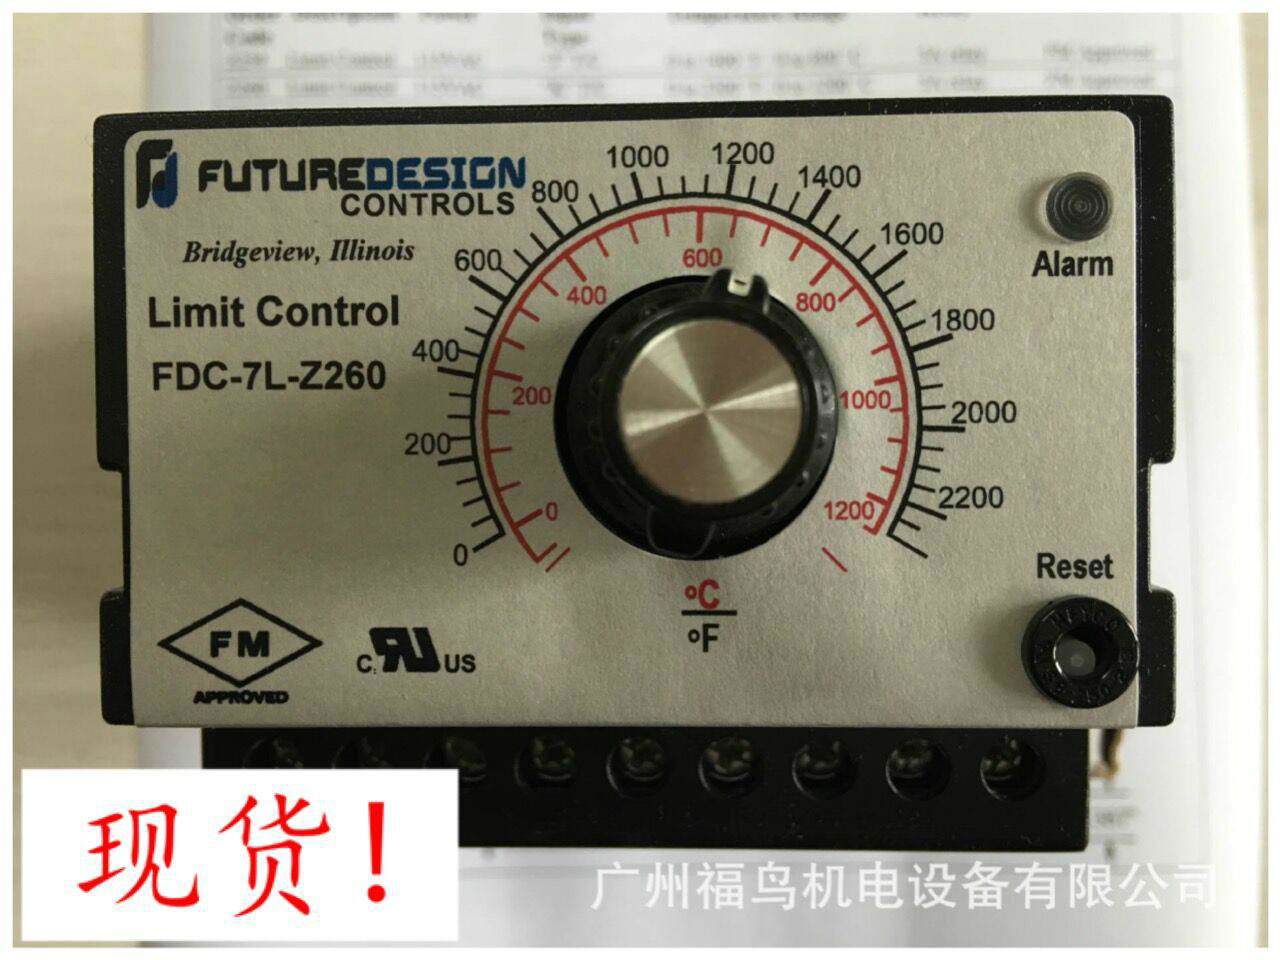 FUTURE DESIGN超温控制器, 型号: FDC-7L-Z260